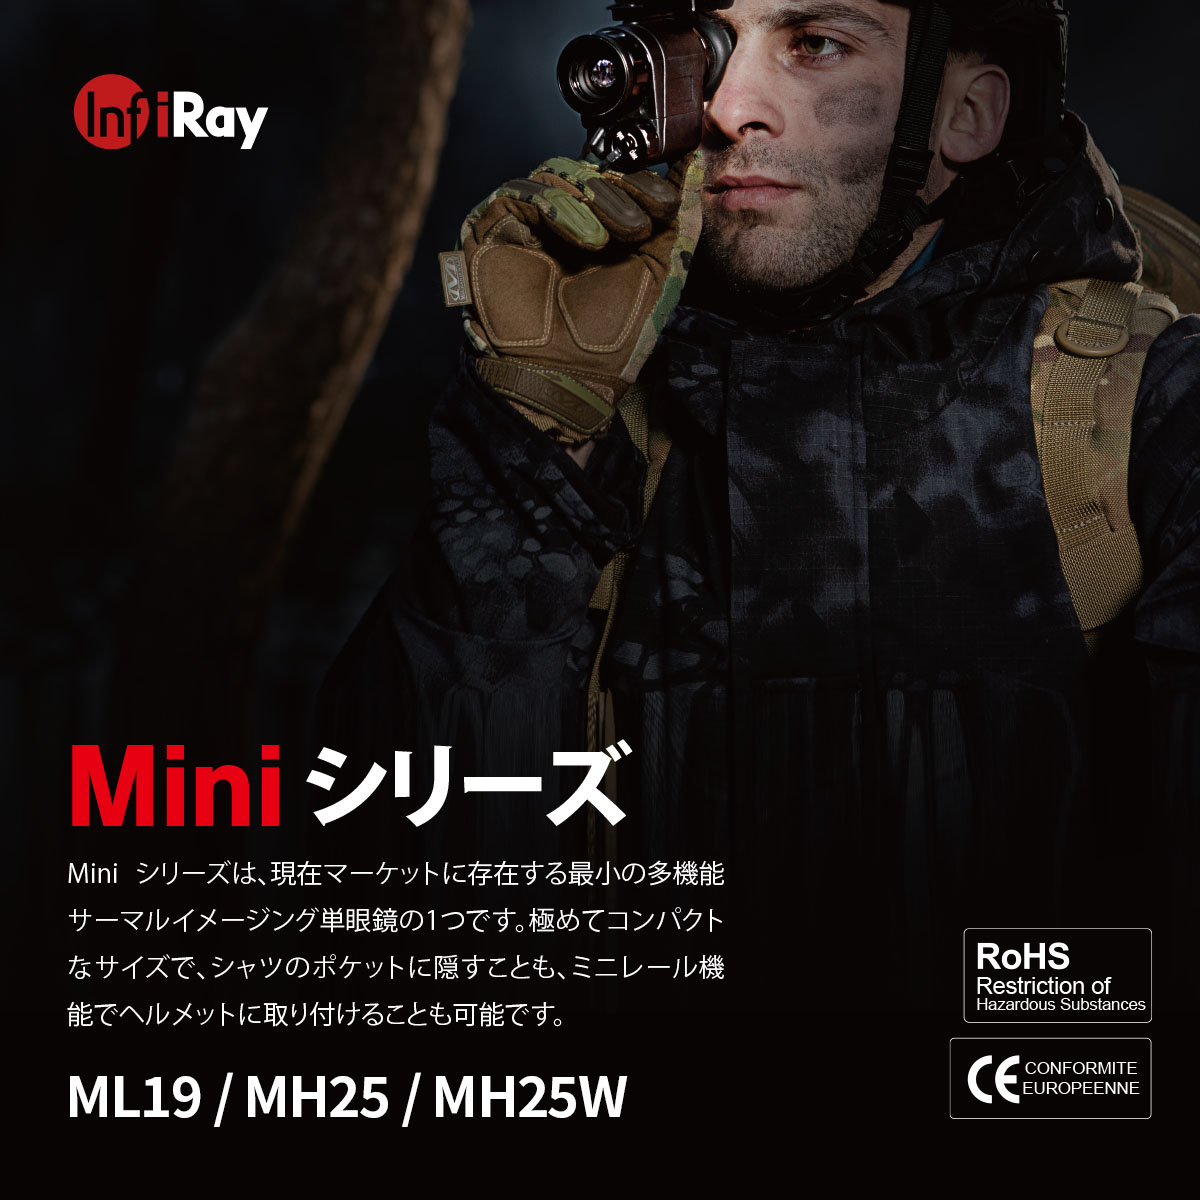 IRAY サーマルイメージングスコープ Miniシリーズ MH25W（ブラック） 光学機器,暗視スコープ タイムテクノロジー公式ショップ